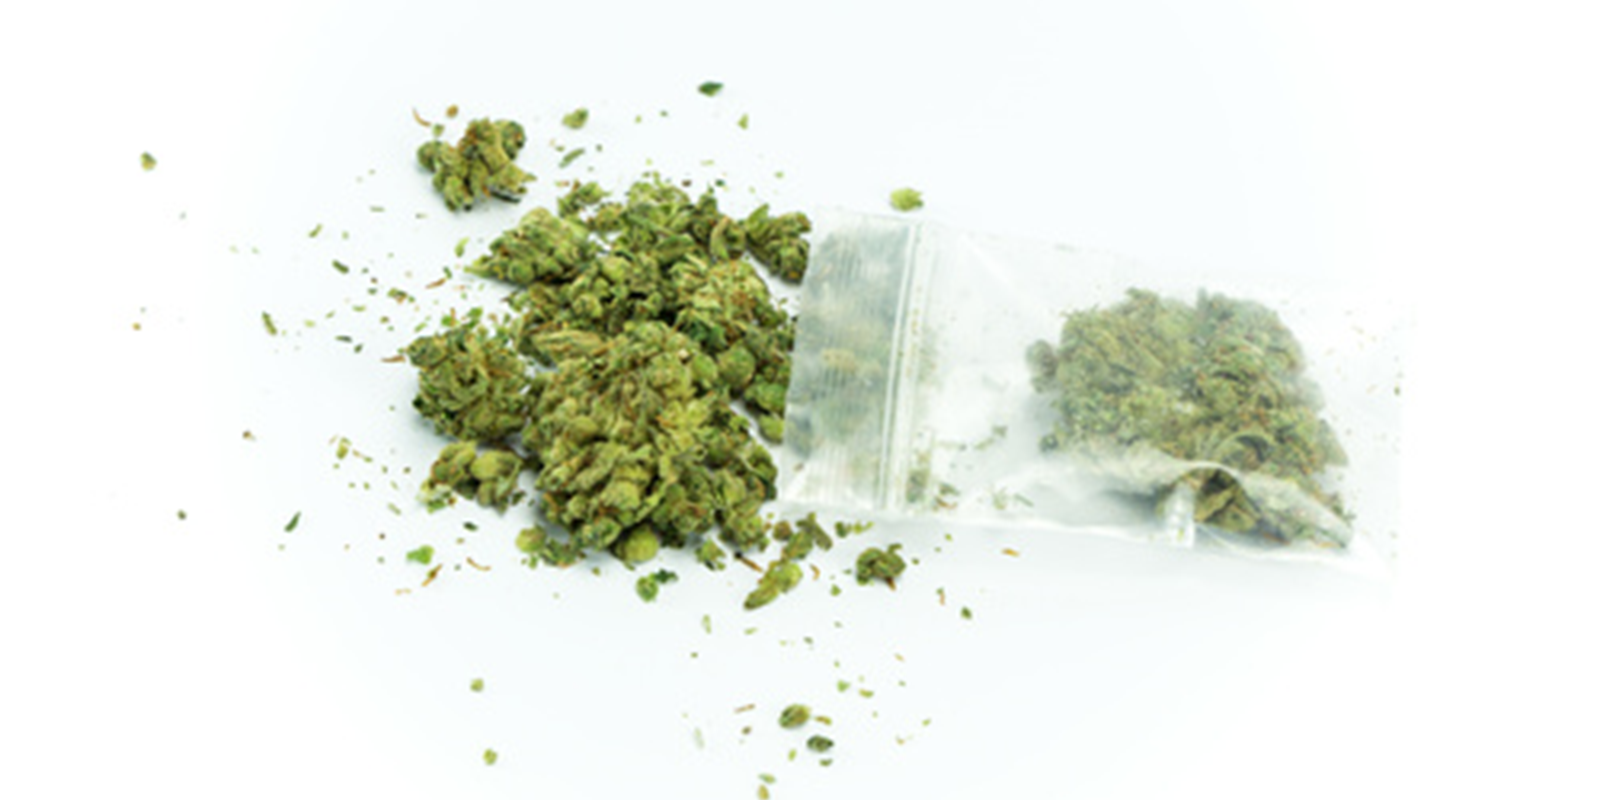 Distinction importante : avis de modification de bail normal et l'avis exceptionnel d'interdiction de fumer le cannabis autorisé par la loi